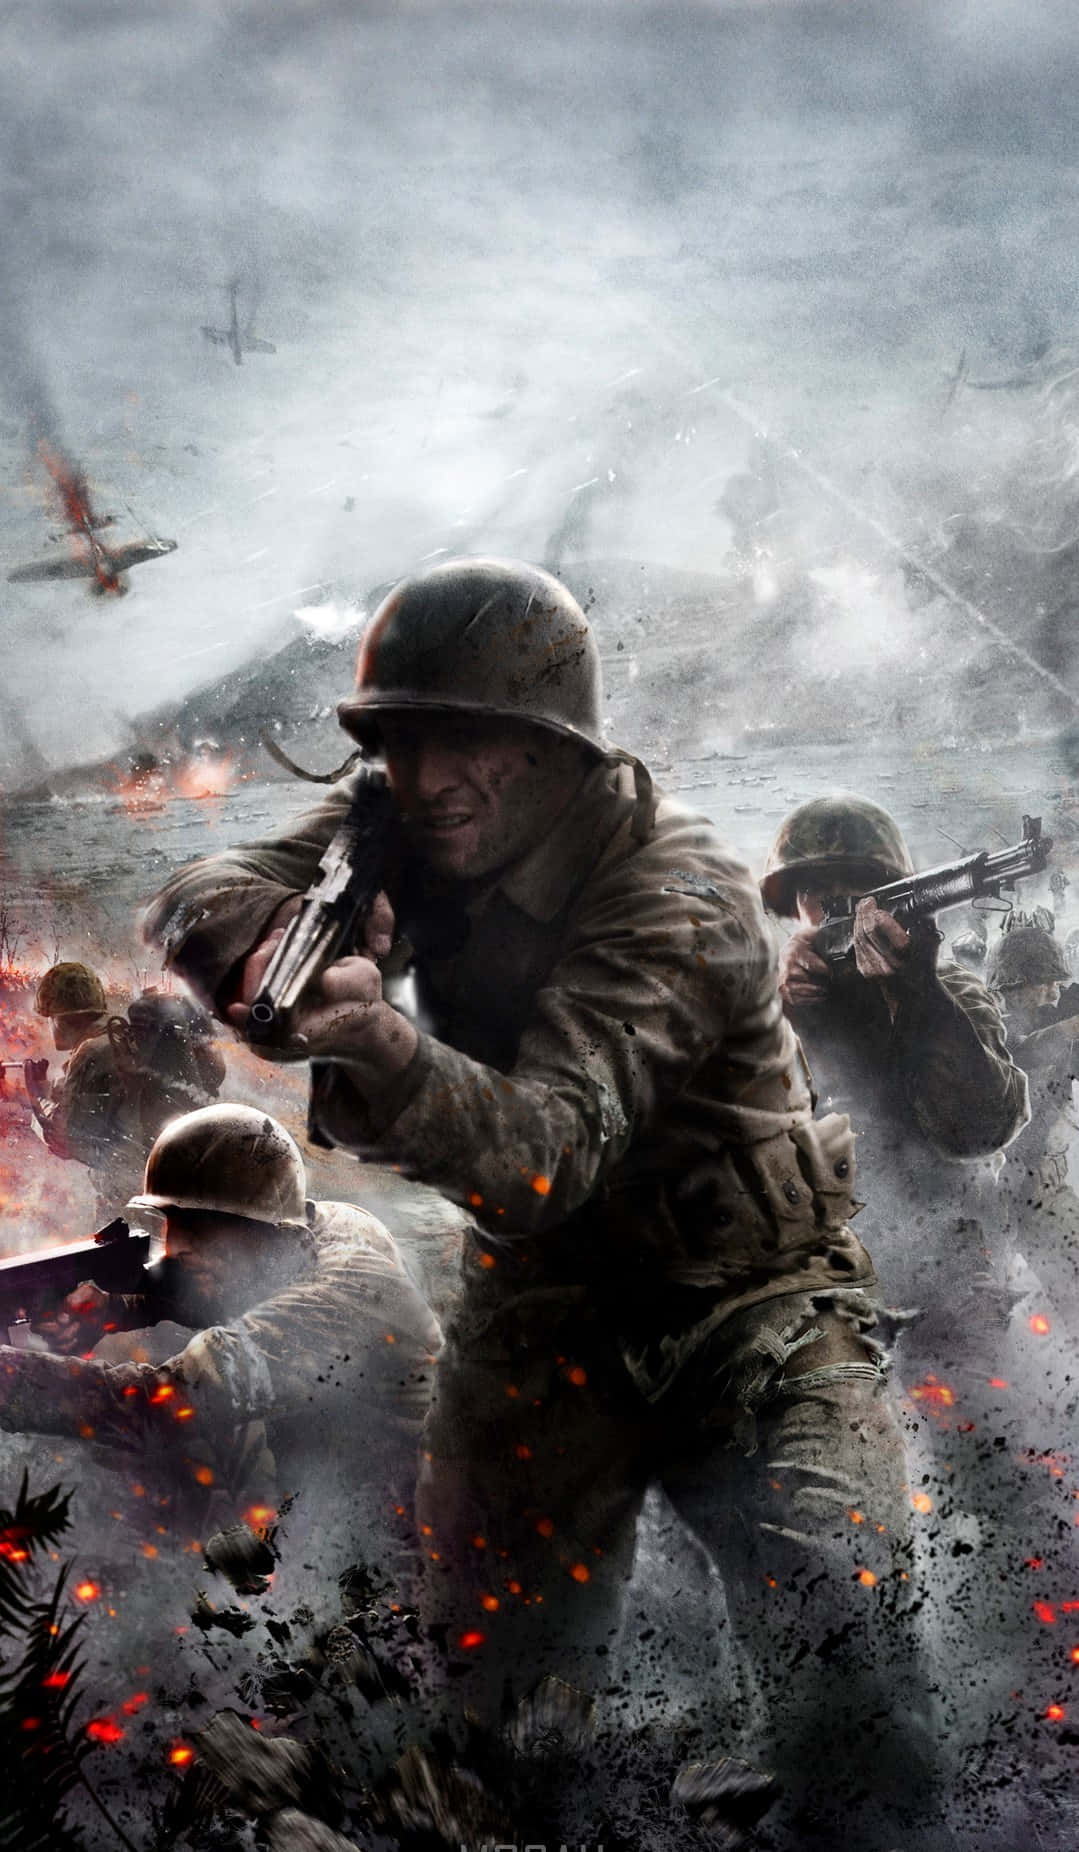 Pixel3xl Hintergrund Battlefield 1 Soldaten In Einer Aschigen Umgebung